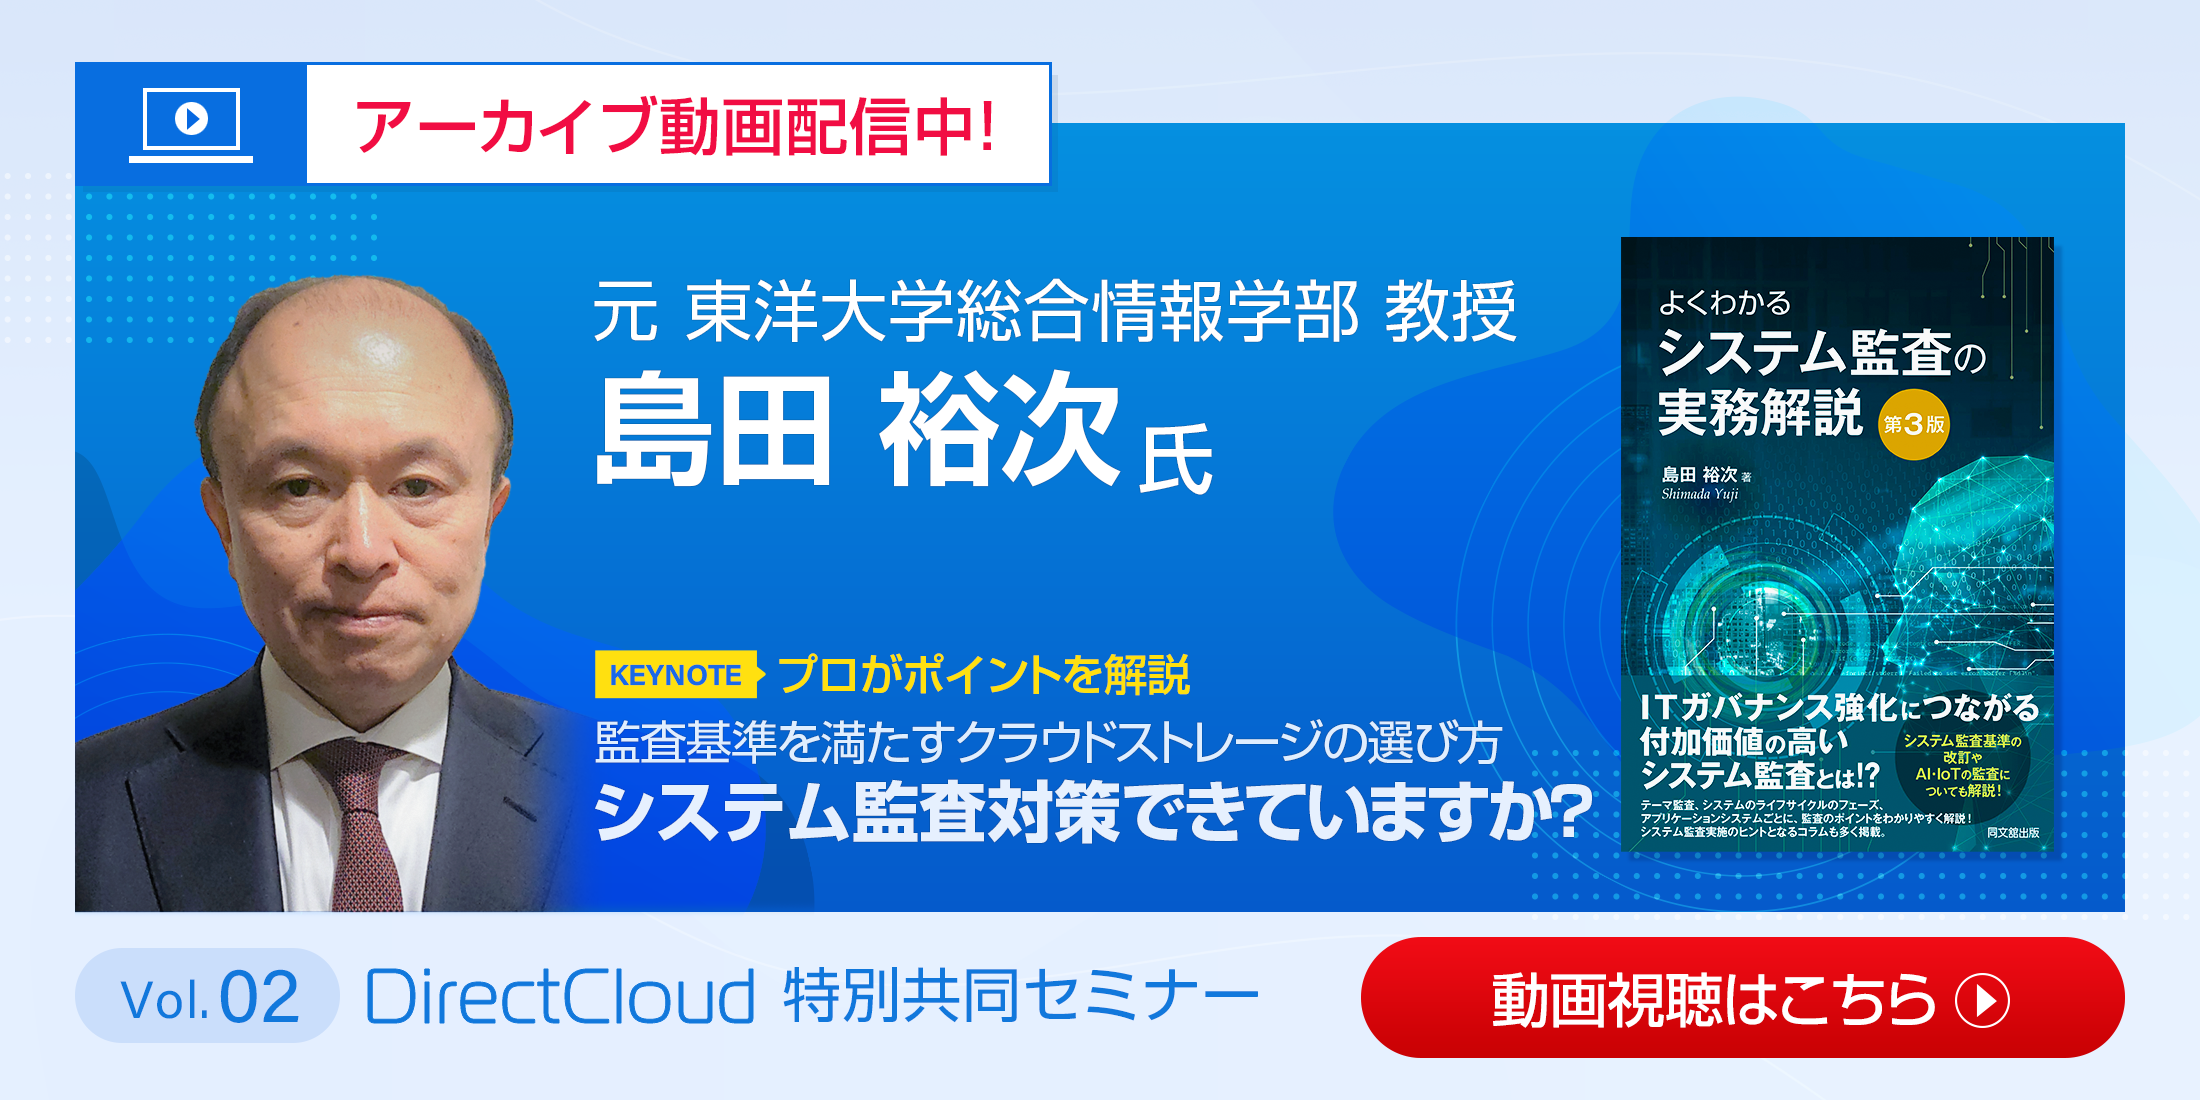 【アーカイブ配信中!!】LINE CLOVA × DirectCloud 特別共同セミナー